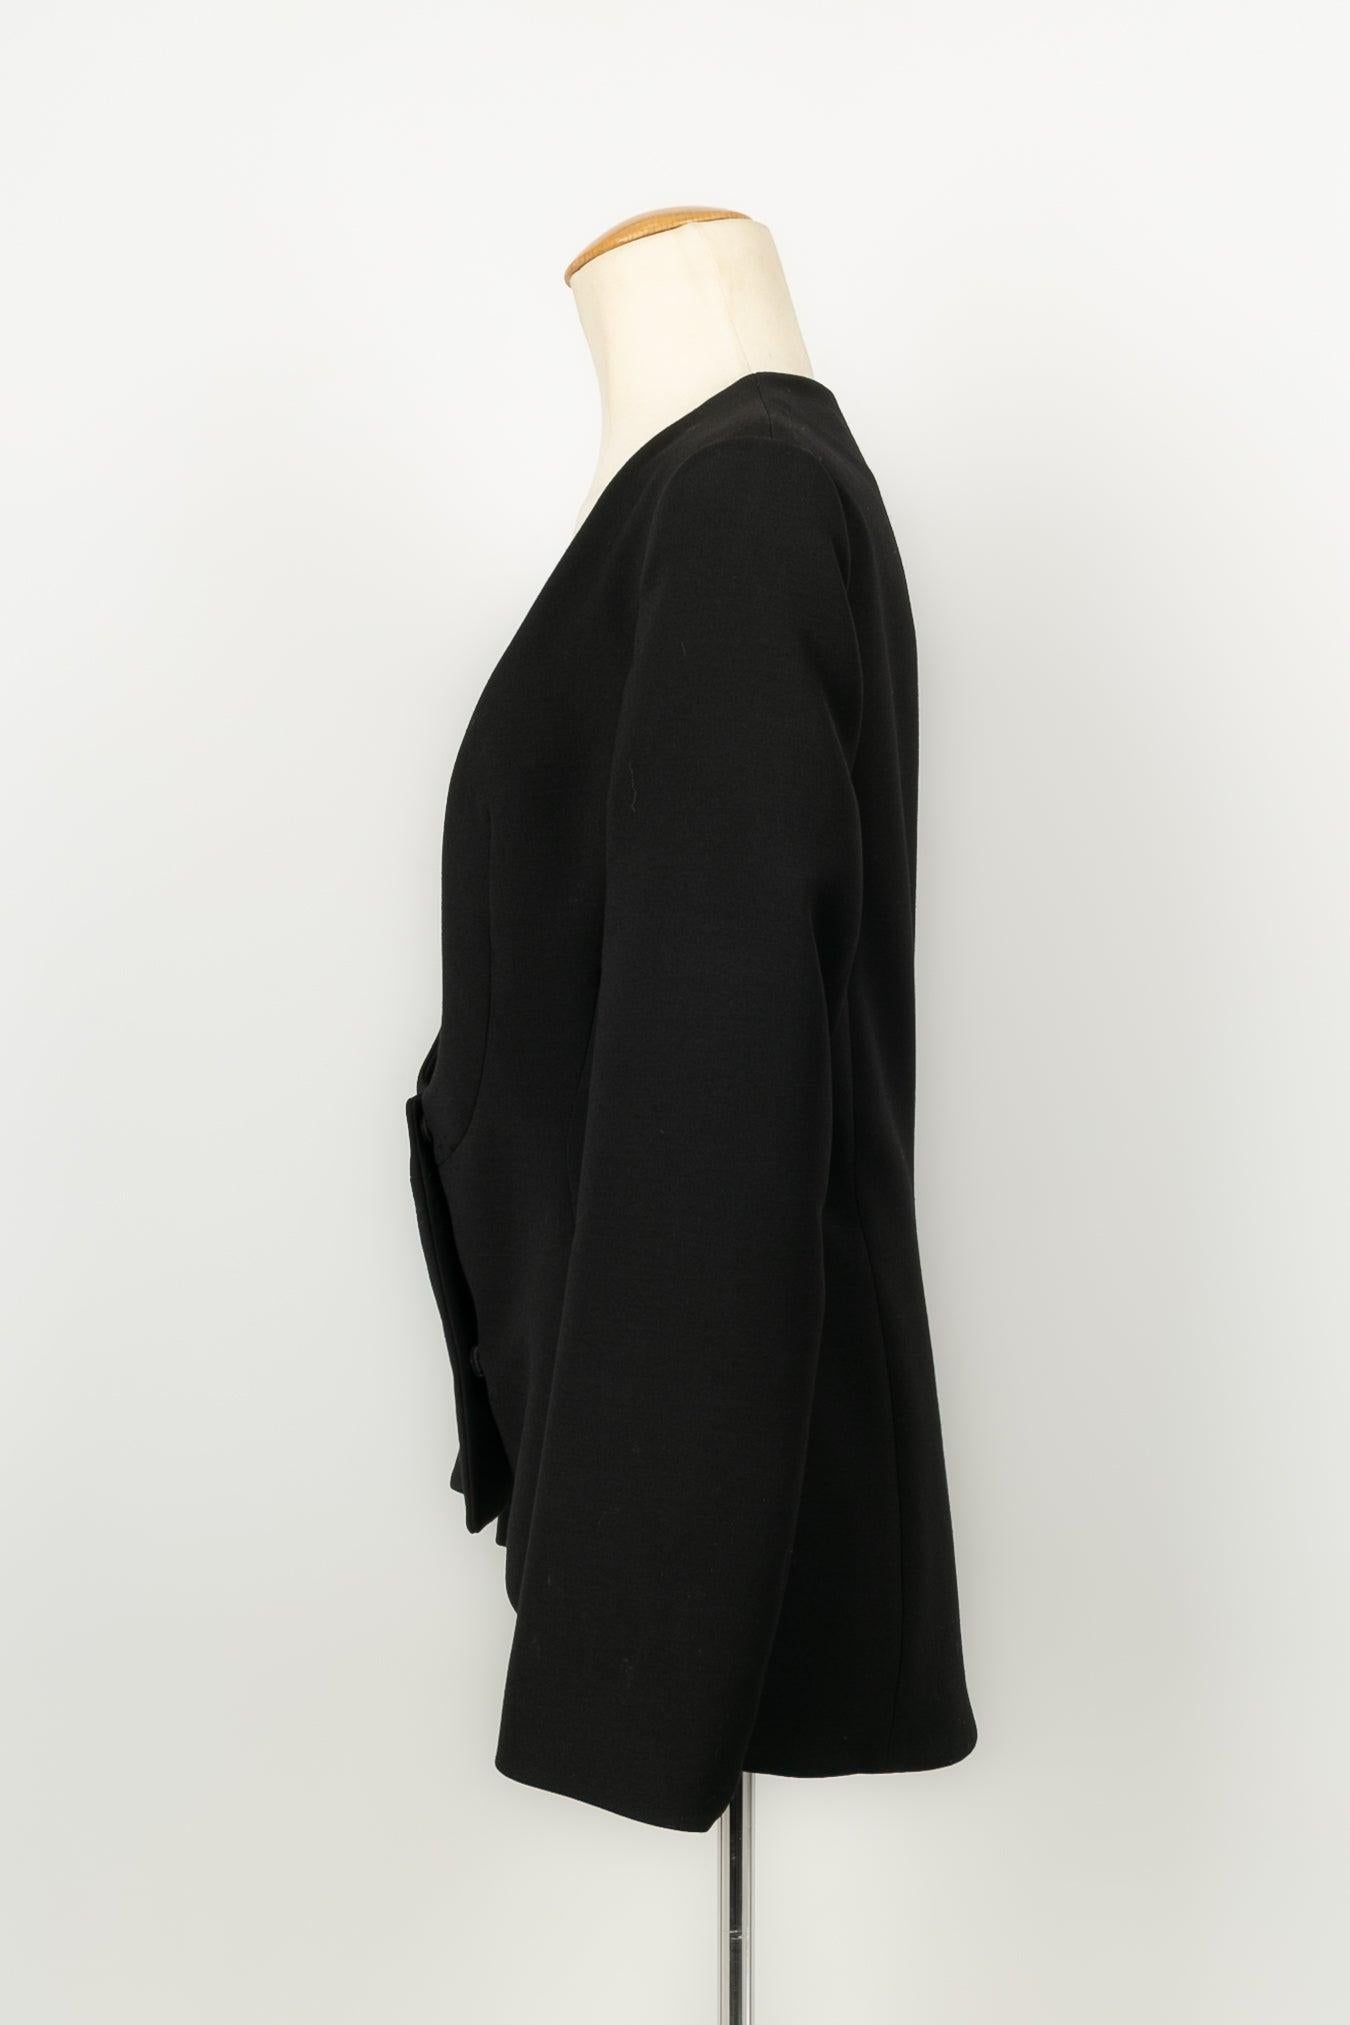 Dior - (Made in Italy) Veste en laine noire, très décolletée. Collectional 2003. Taille 40FR.

Informations complémentaires : 
Dimensions : Largeur des épaules : 38 cm, Poitrine : 43 cm, Longueur des manches : 54 cm, Longueur : 58 cm
Condit : Très